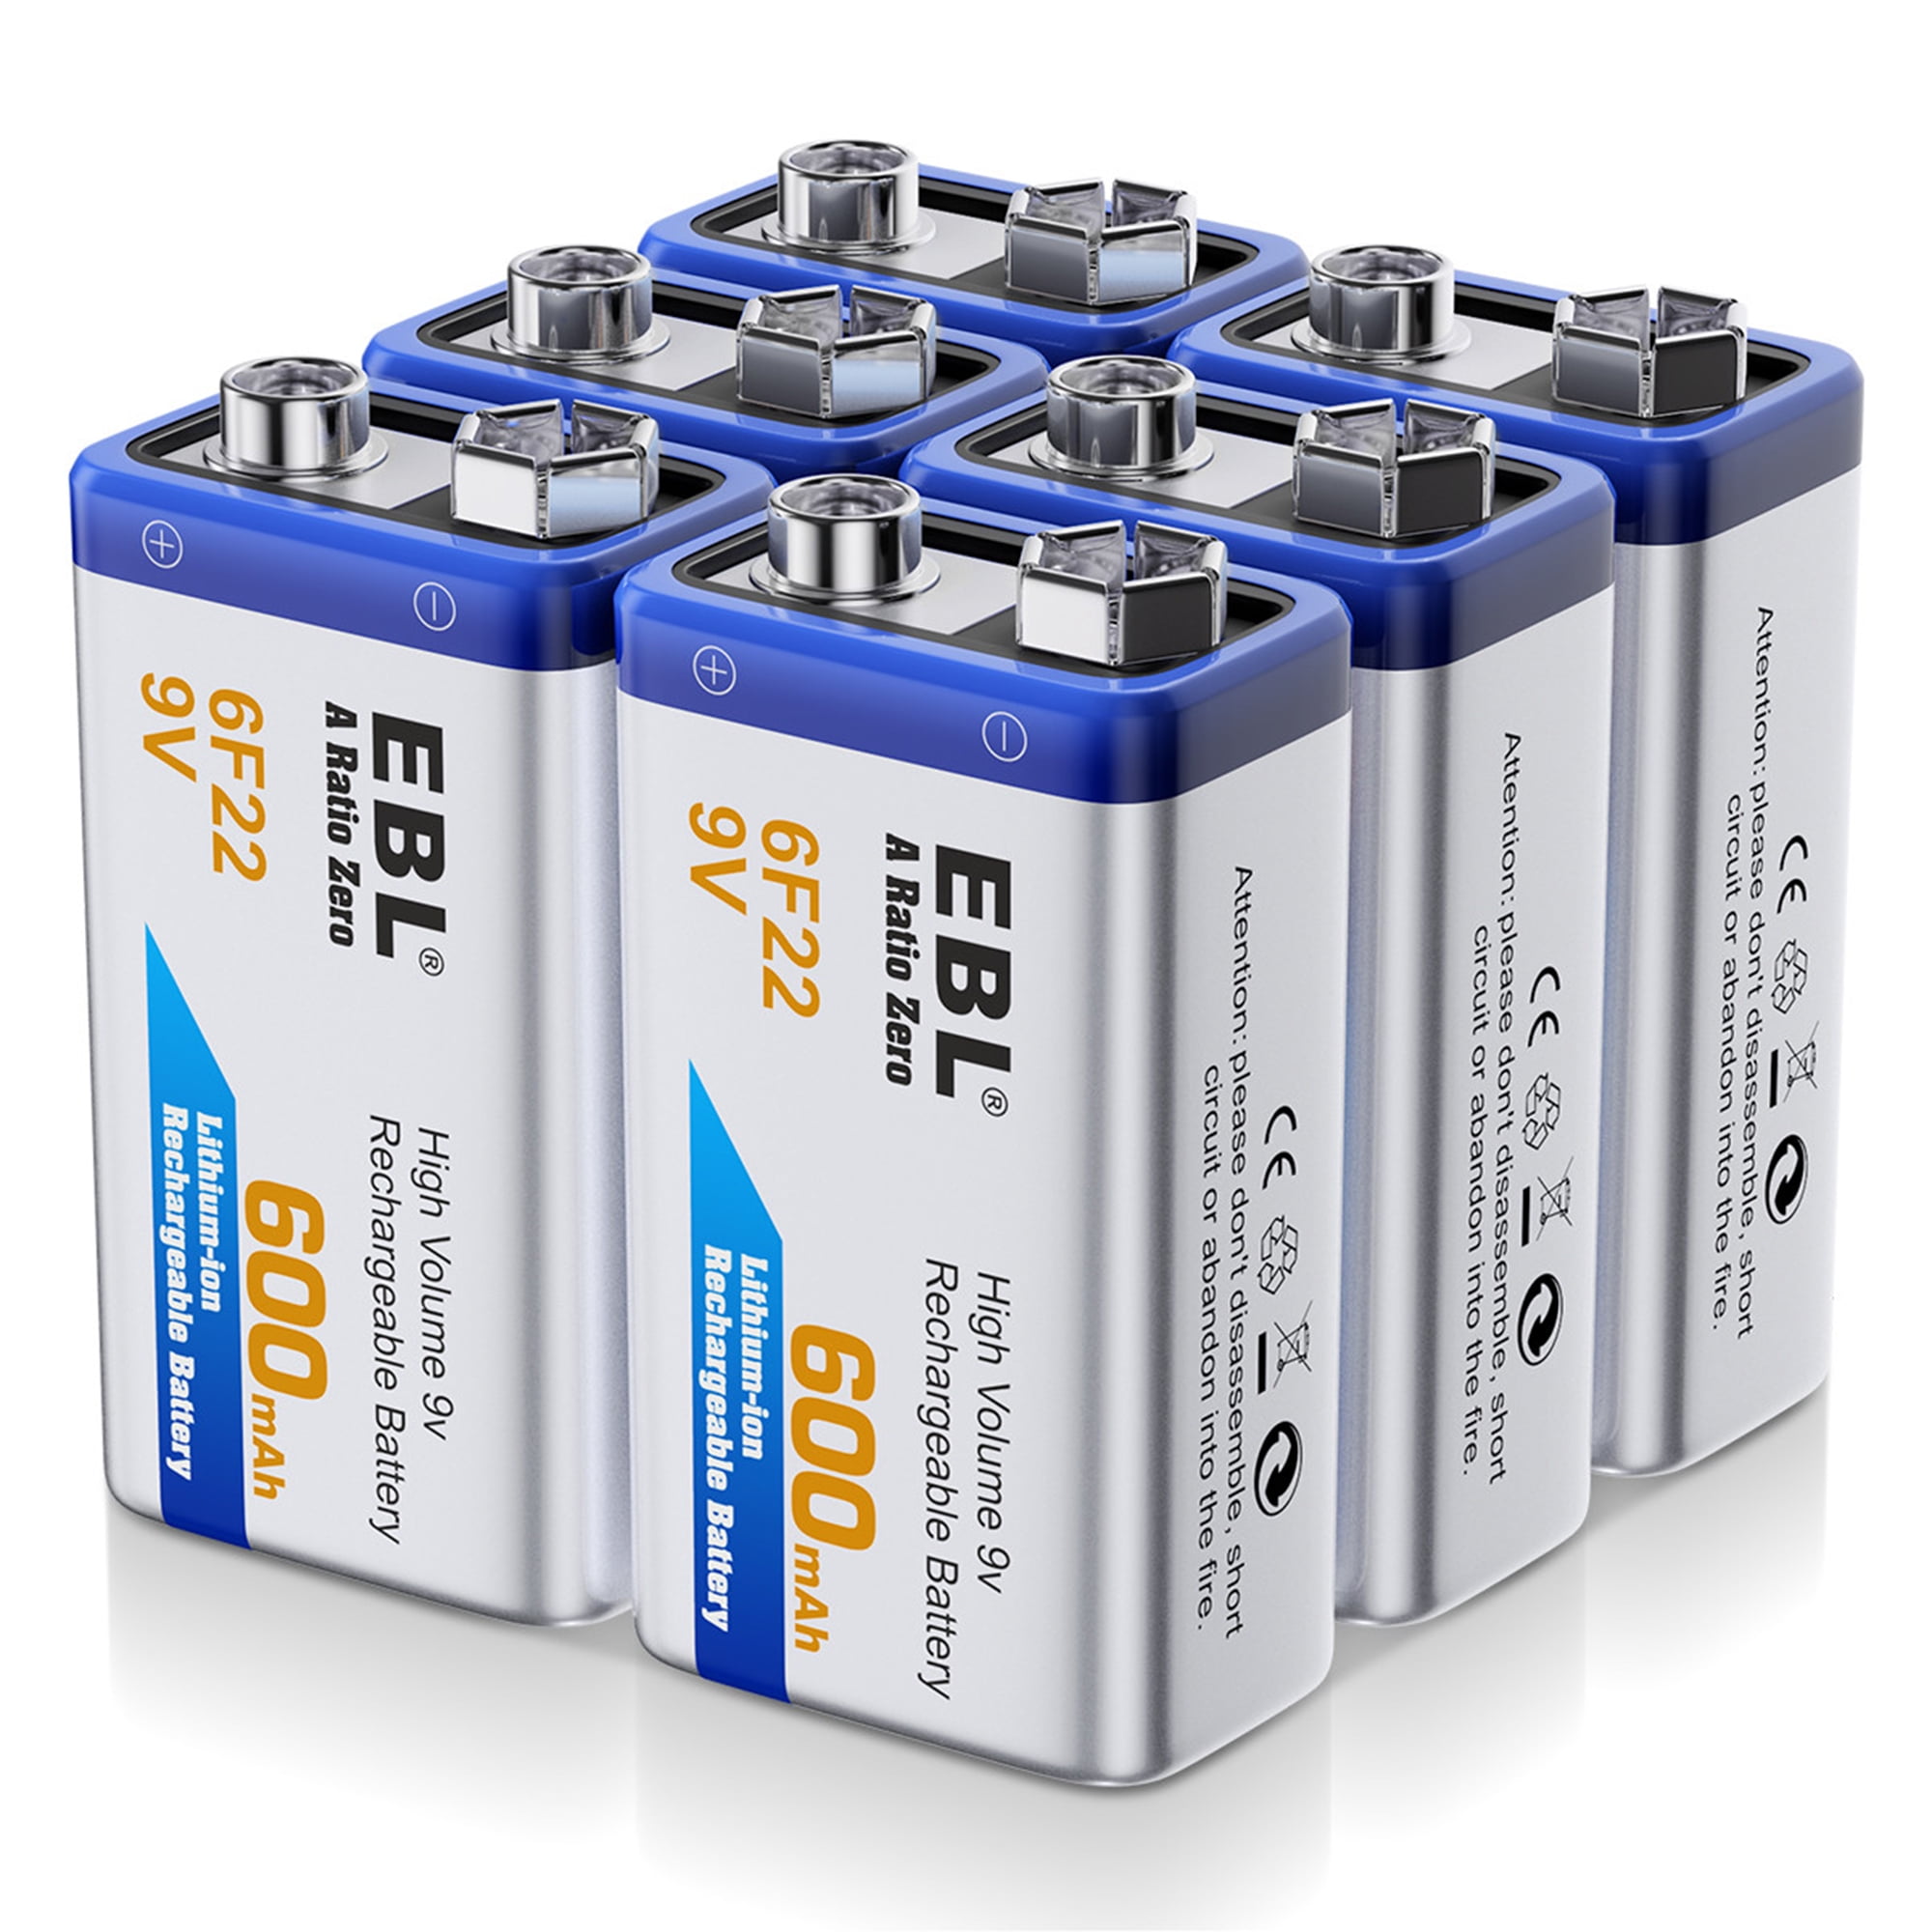 9 volt battery